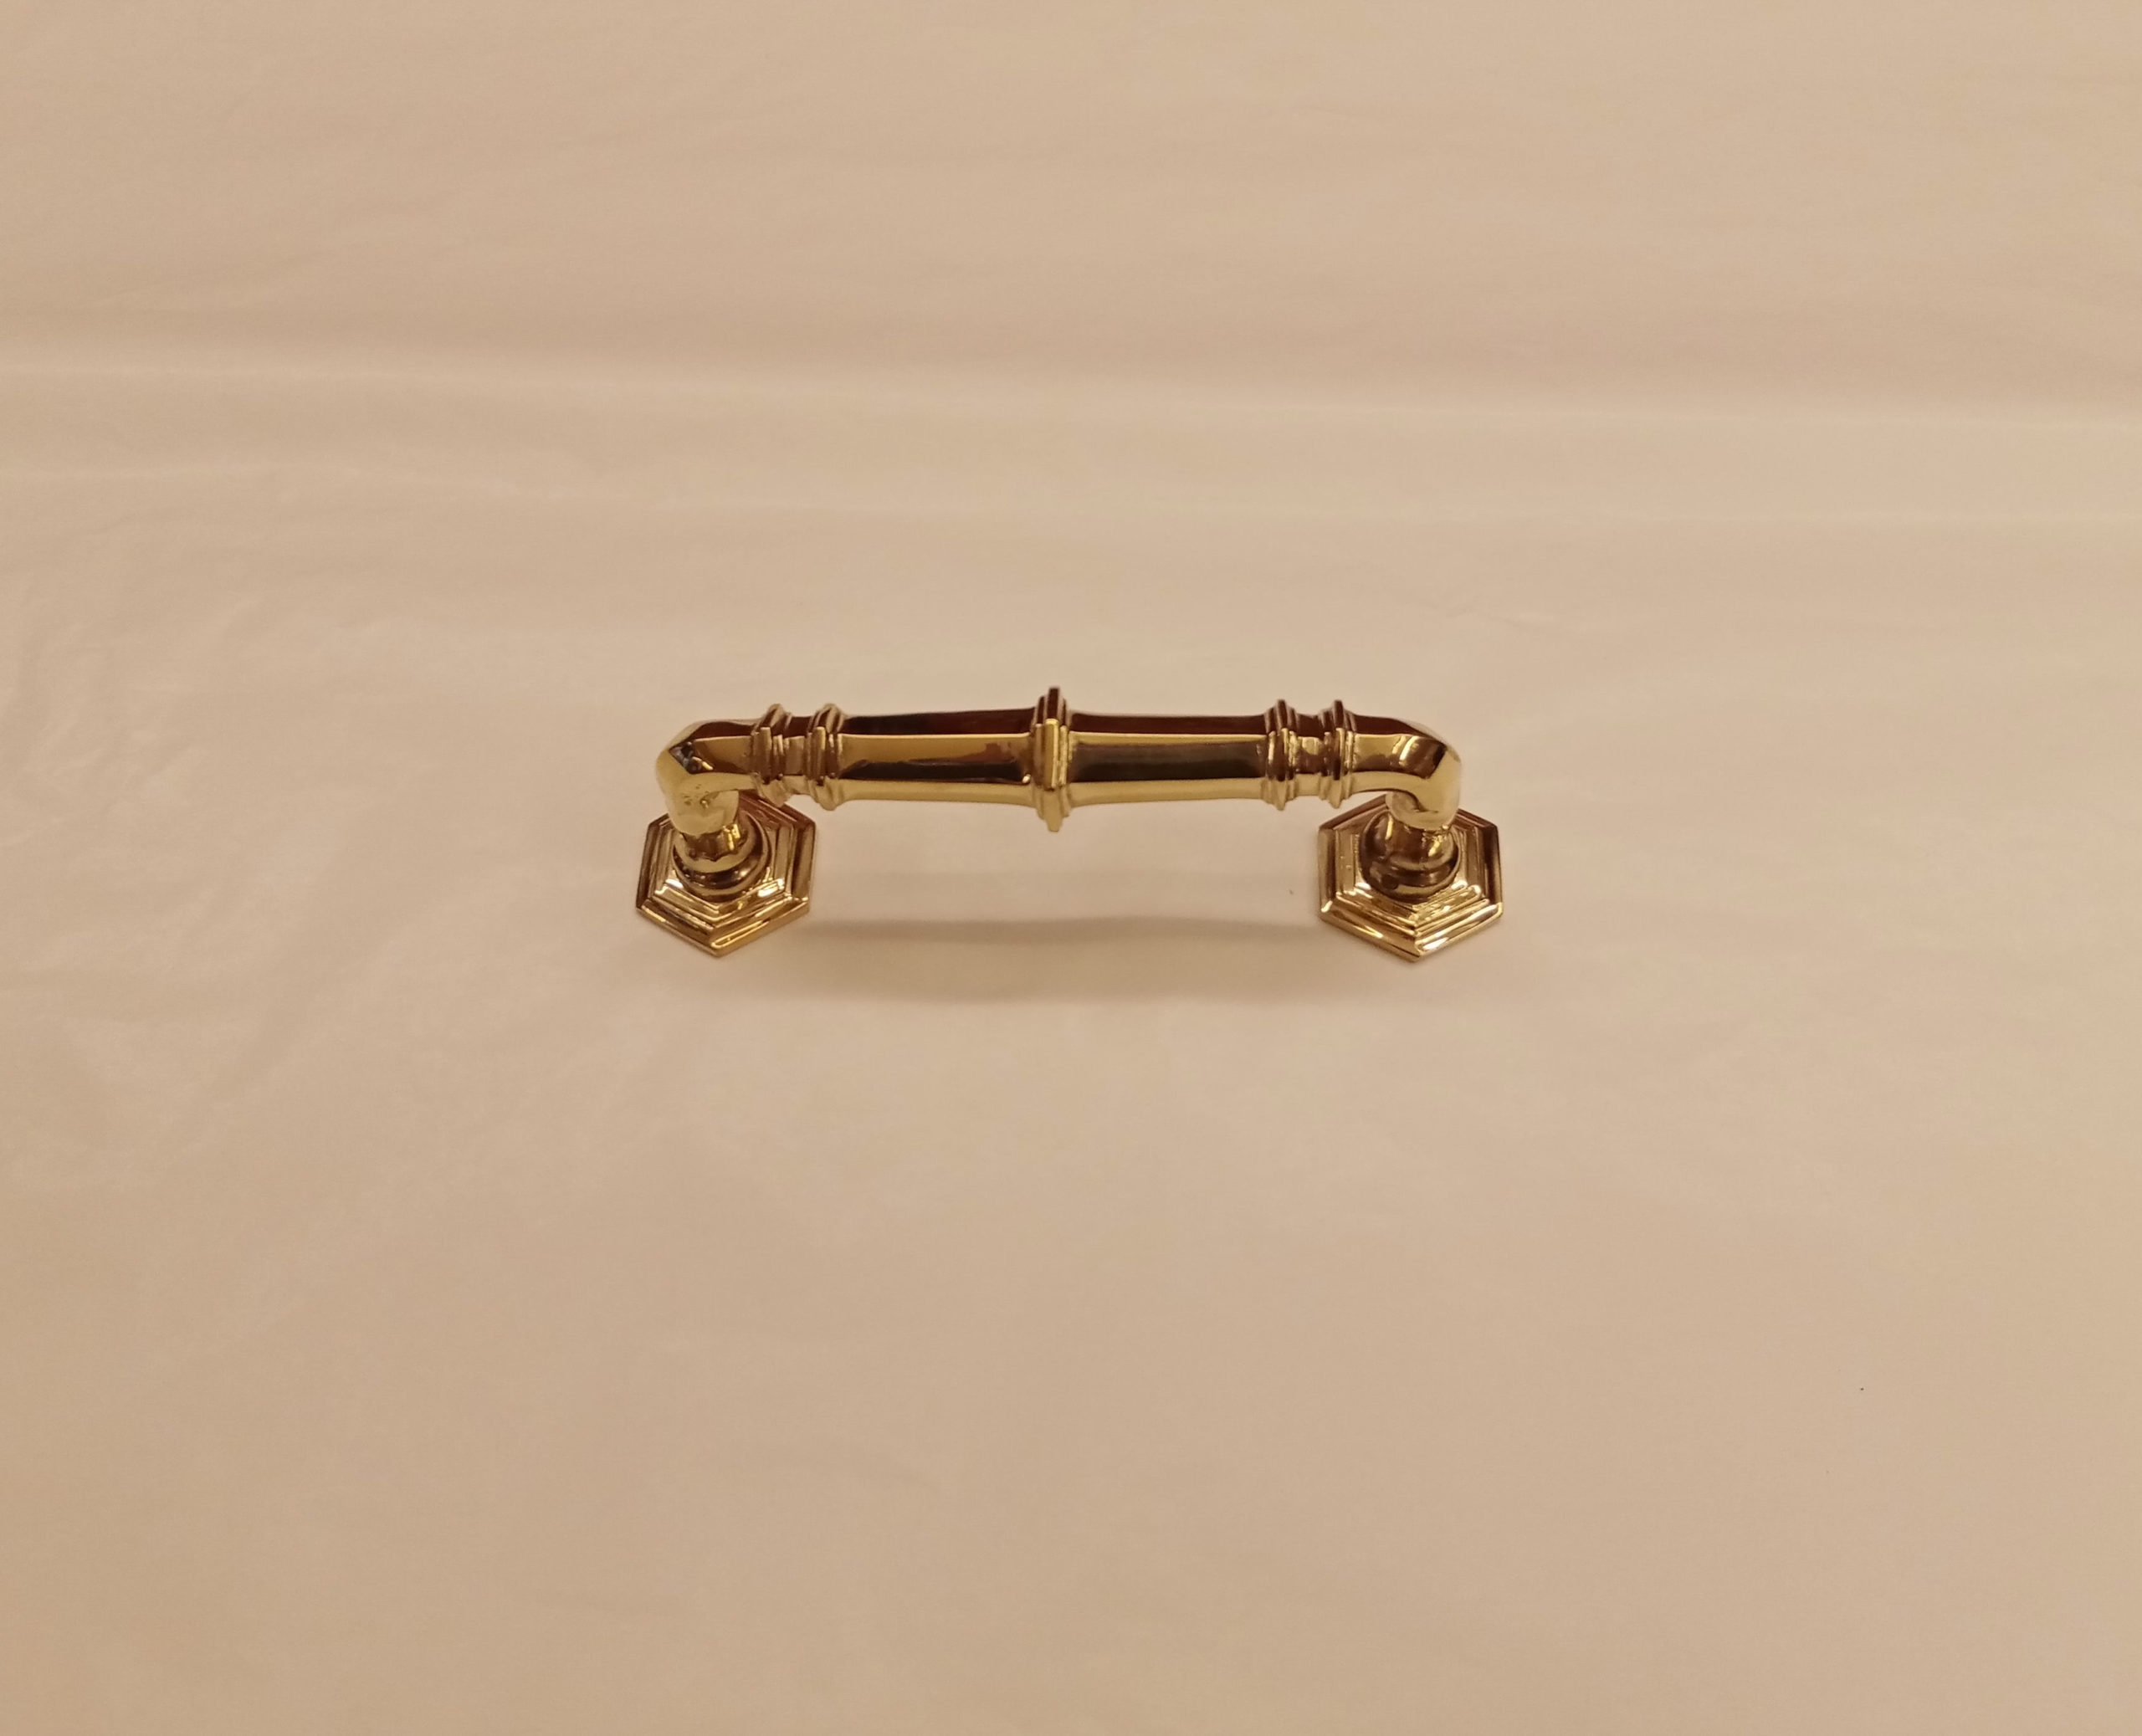 maniglia da portoncino modello Busirivici - Busirivici model door handle